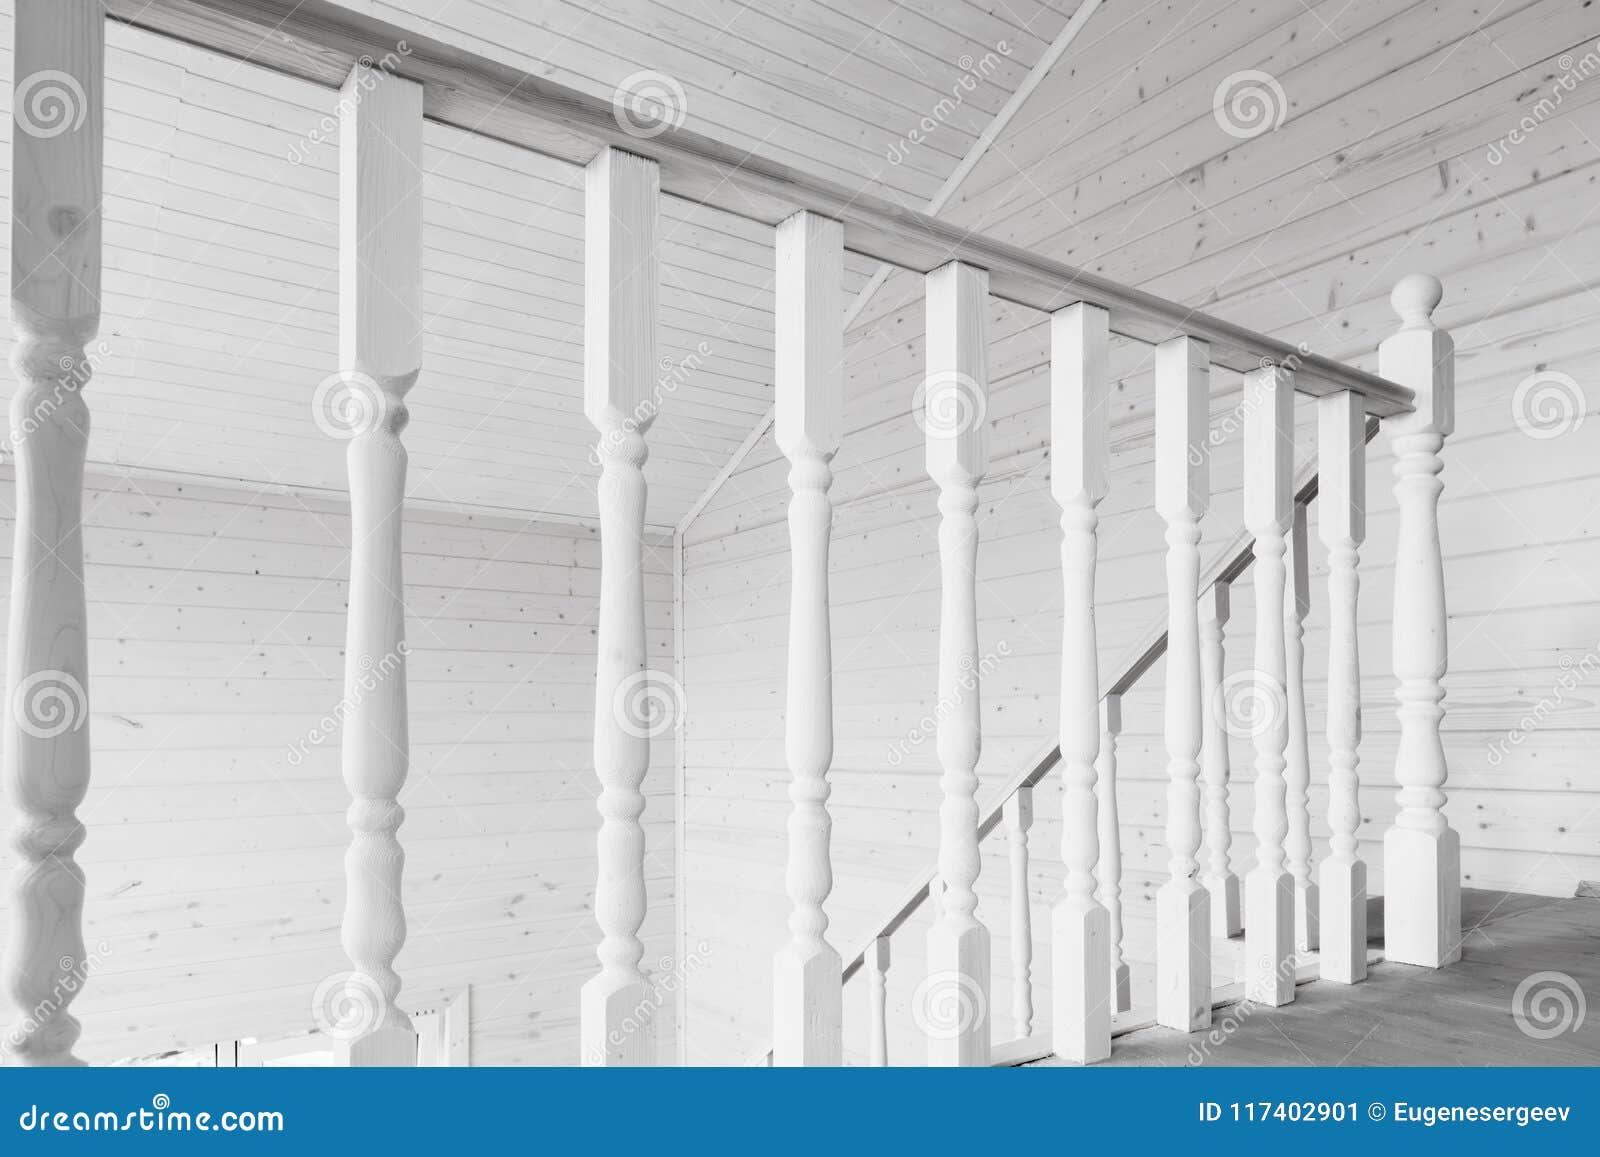 White Balusters Balcony Railings Stock Image Image Of